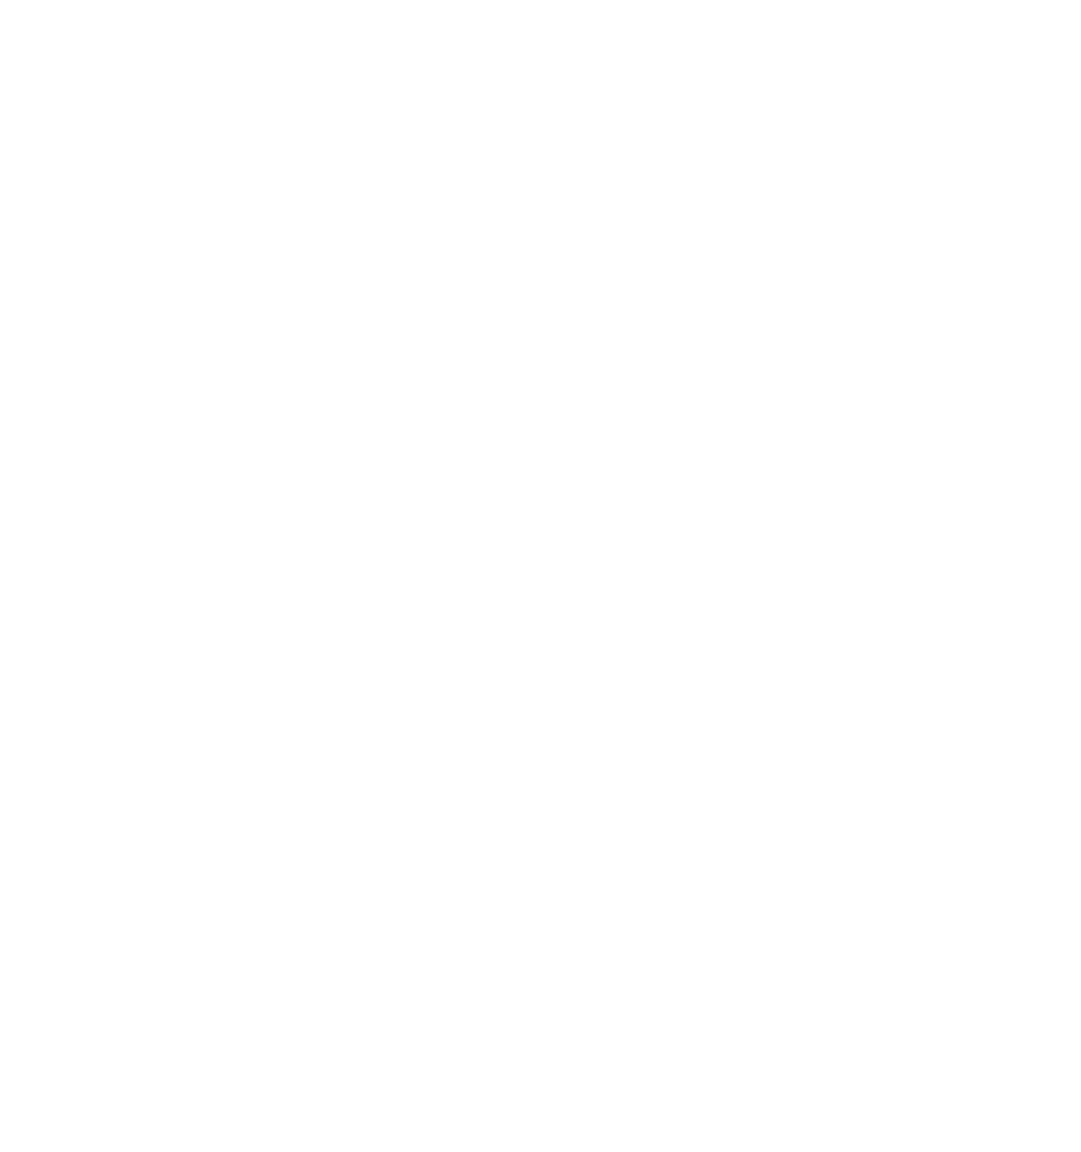 Saro Cider